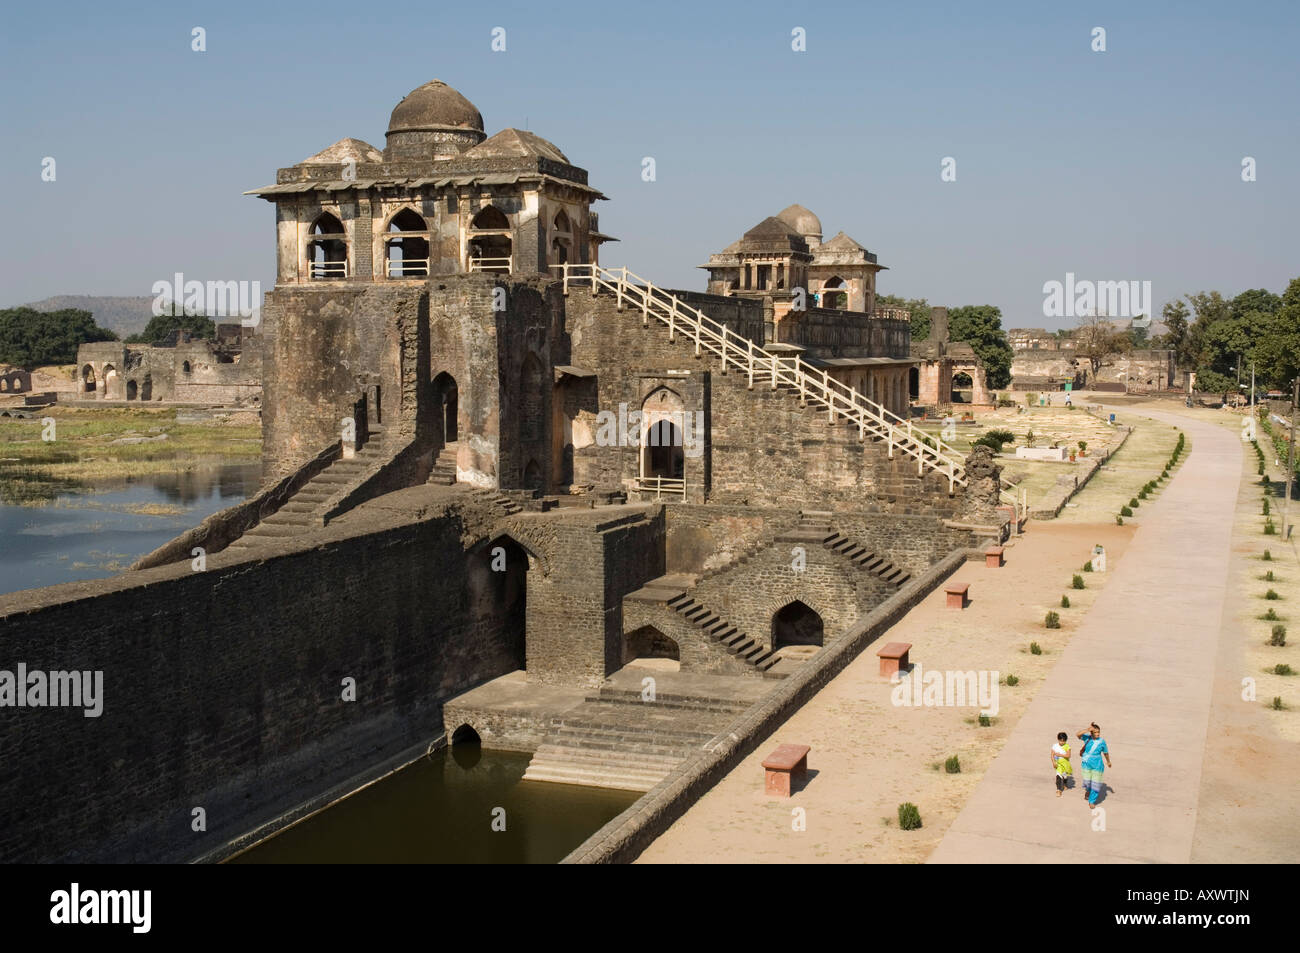 The Jahaz Mahal or Ships Palace in the Royal Enclave, Mandu, Madhya Pradesh, India Stock Photo